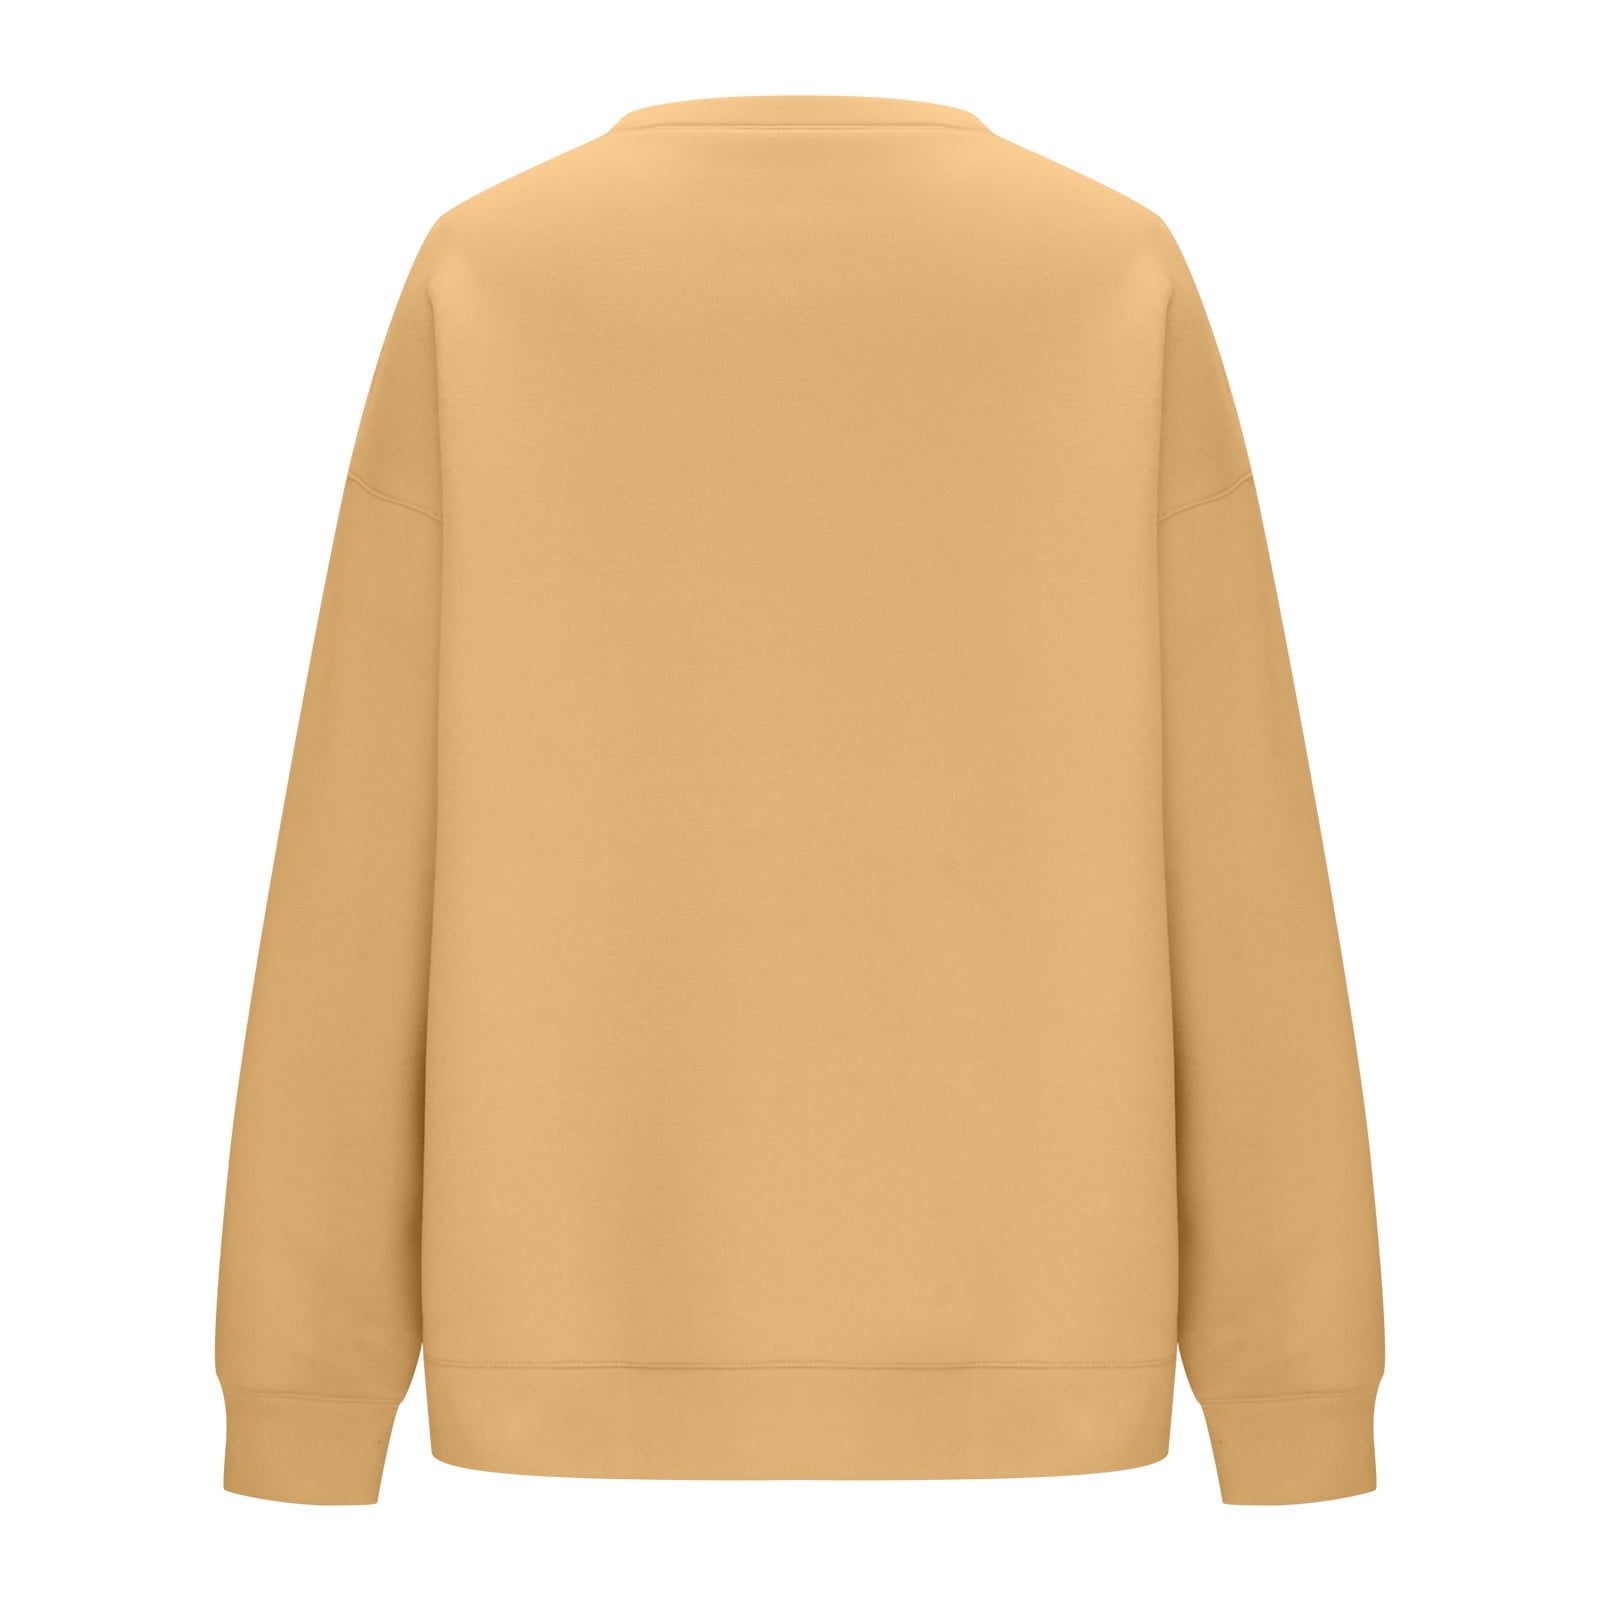 YYDGH Oversized Sweatshirt for Women Fleece Long Sleeve Crewneck